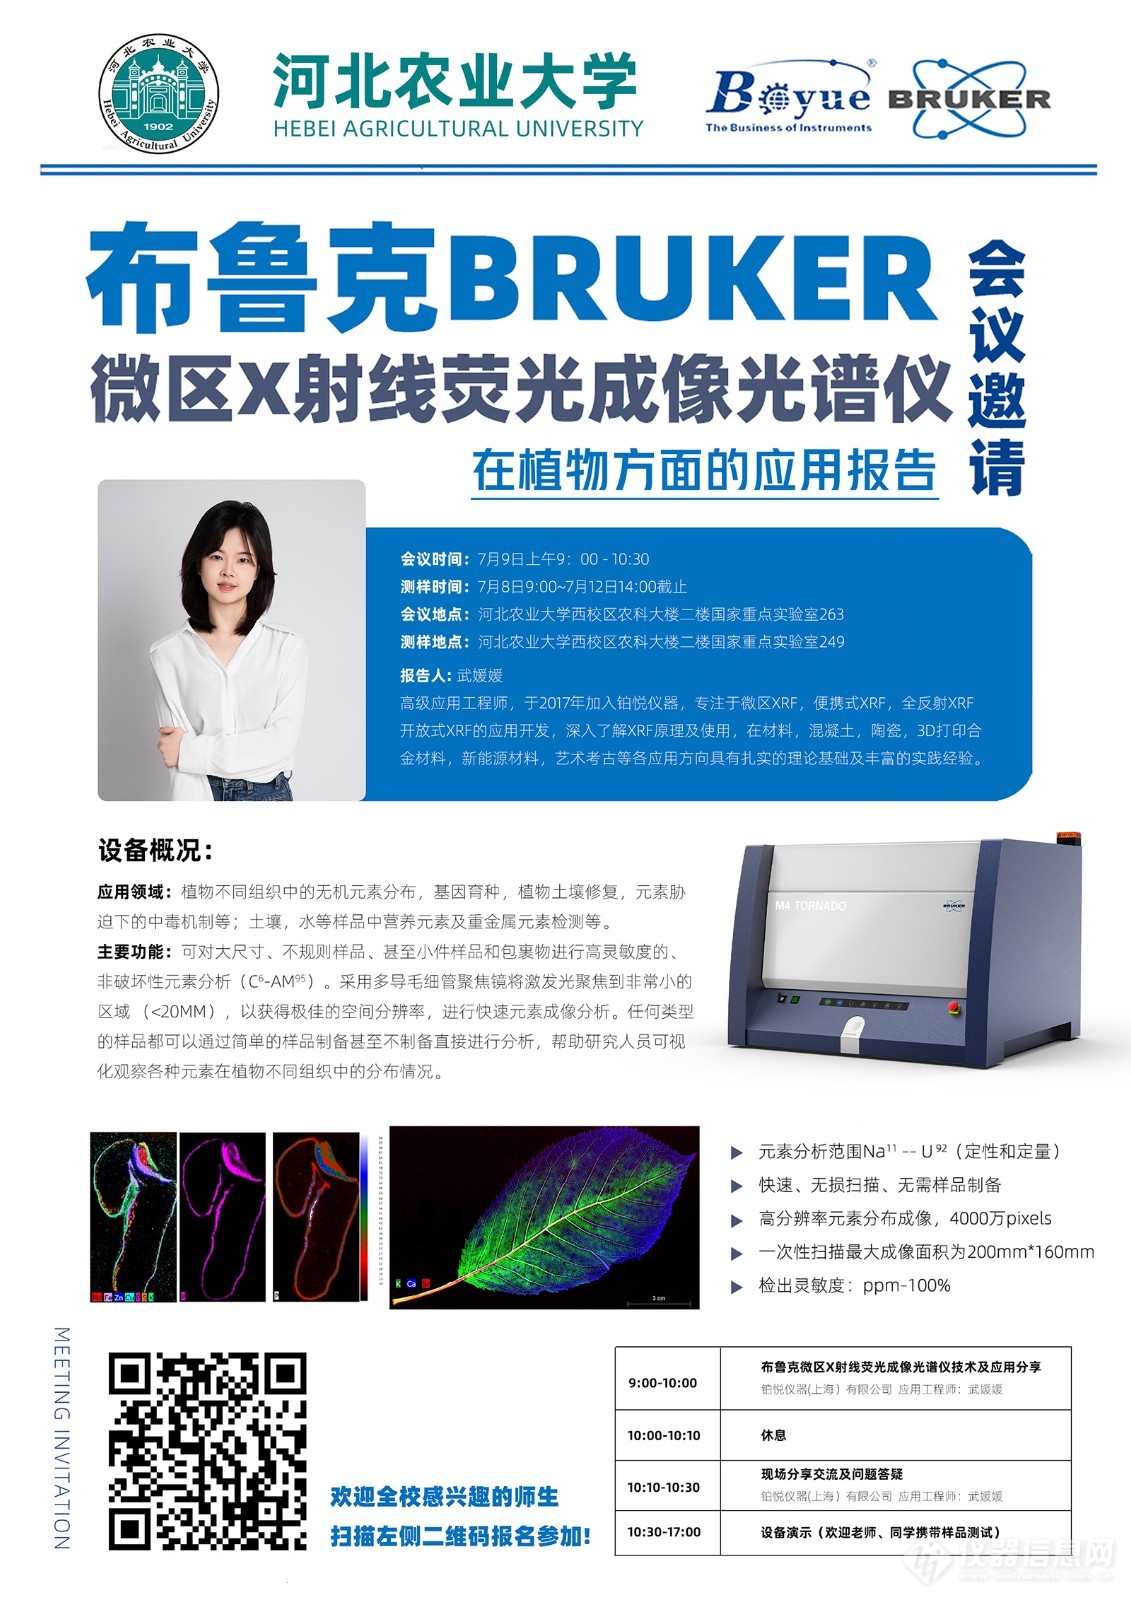 2 会议邀请  河北农业大学布鲁克微区X射线荧光成像光谱仪技术及应用分享.jpg